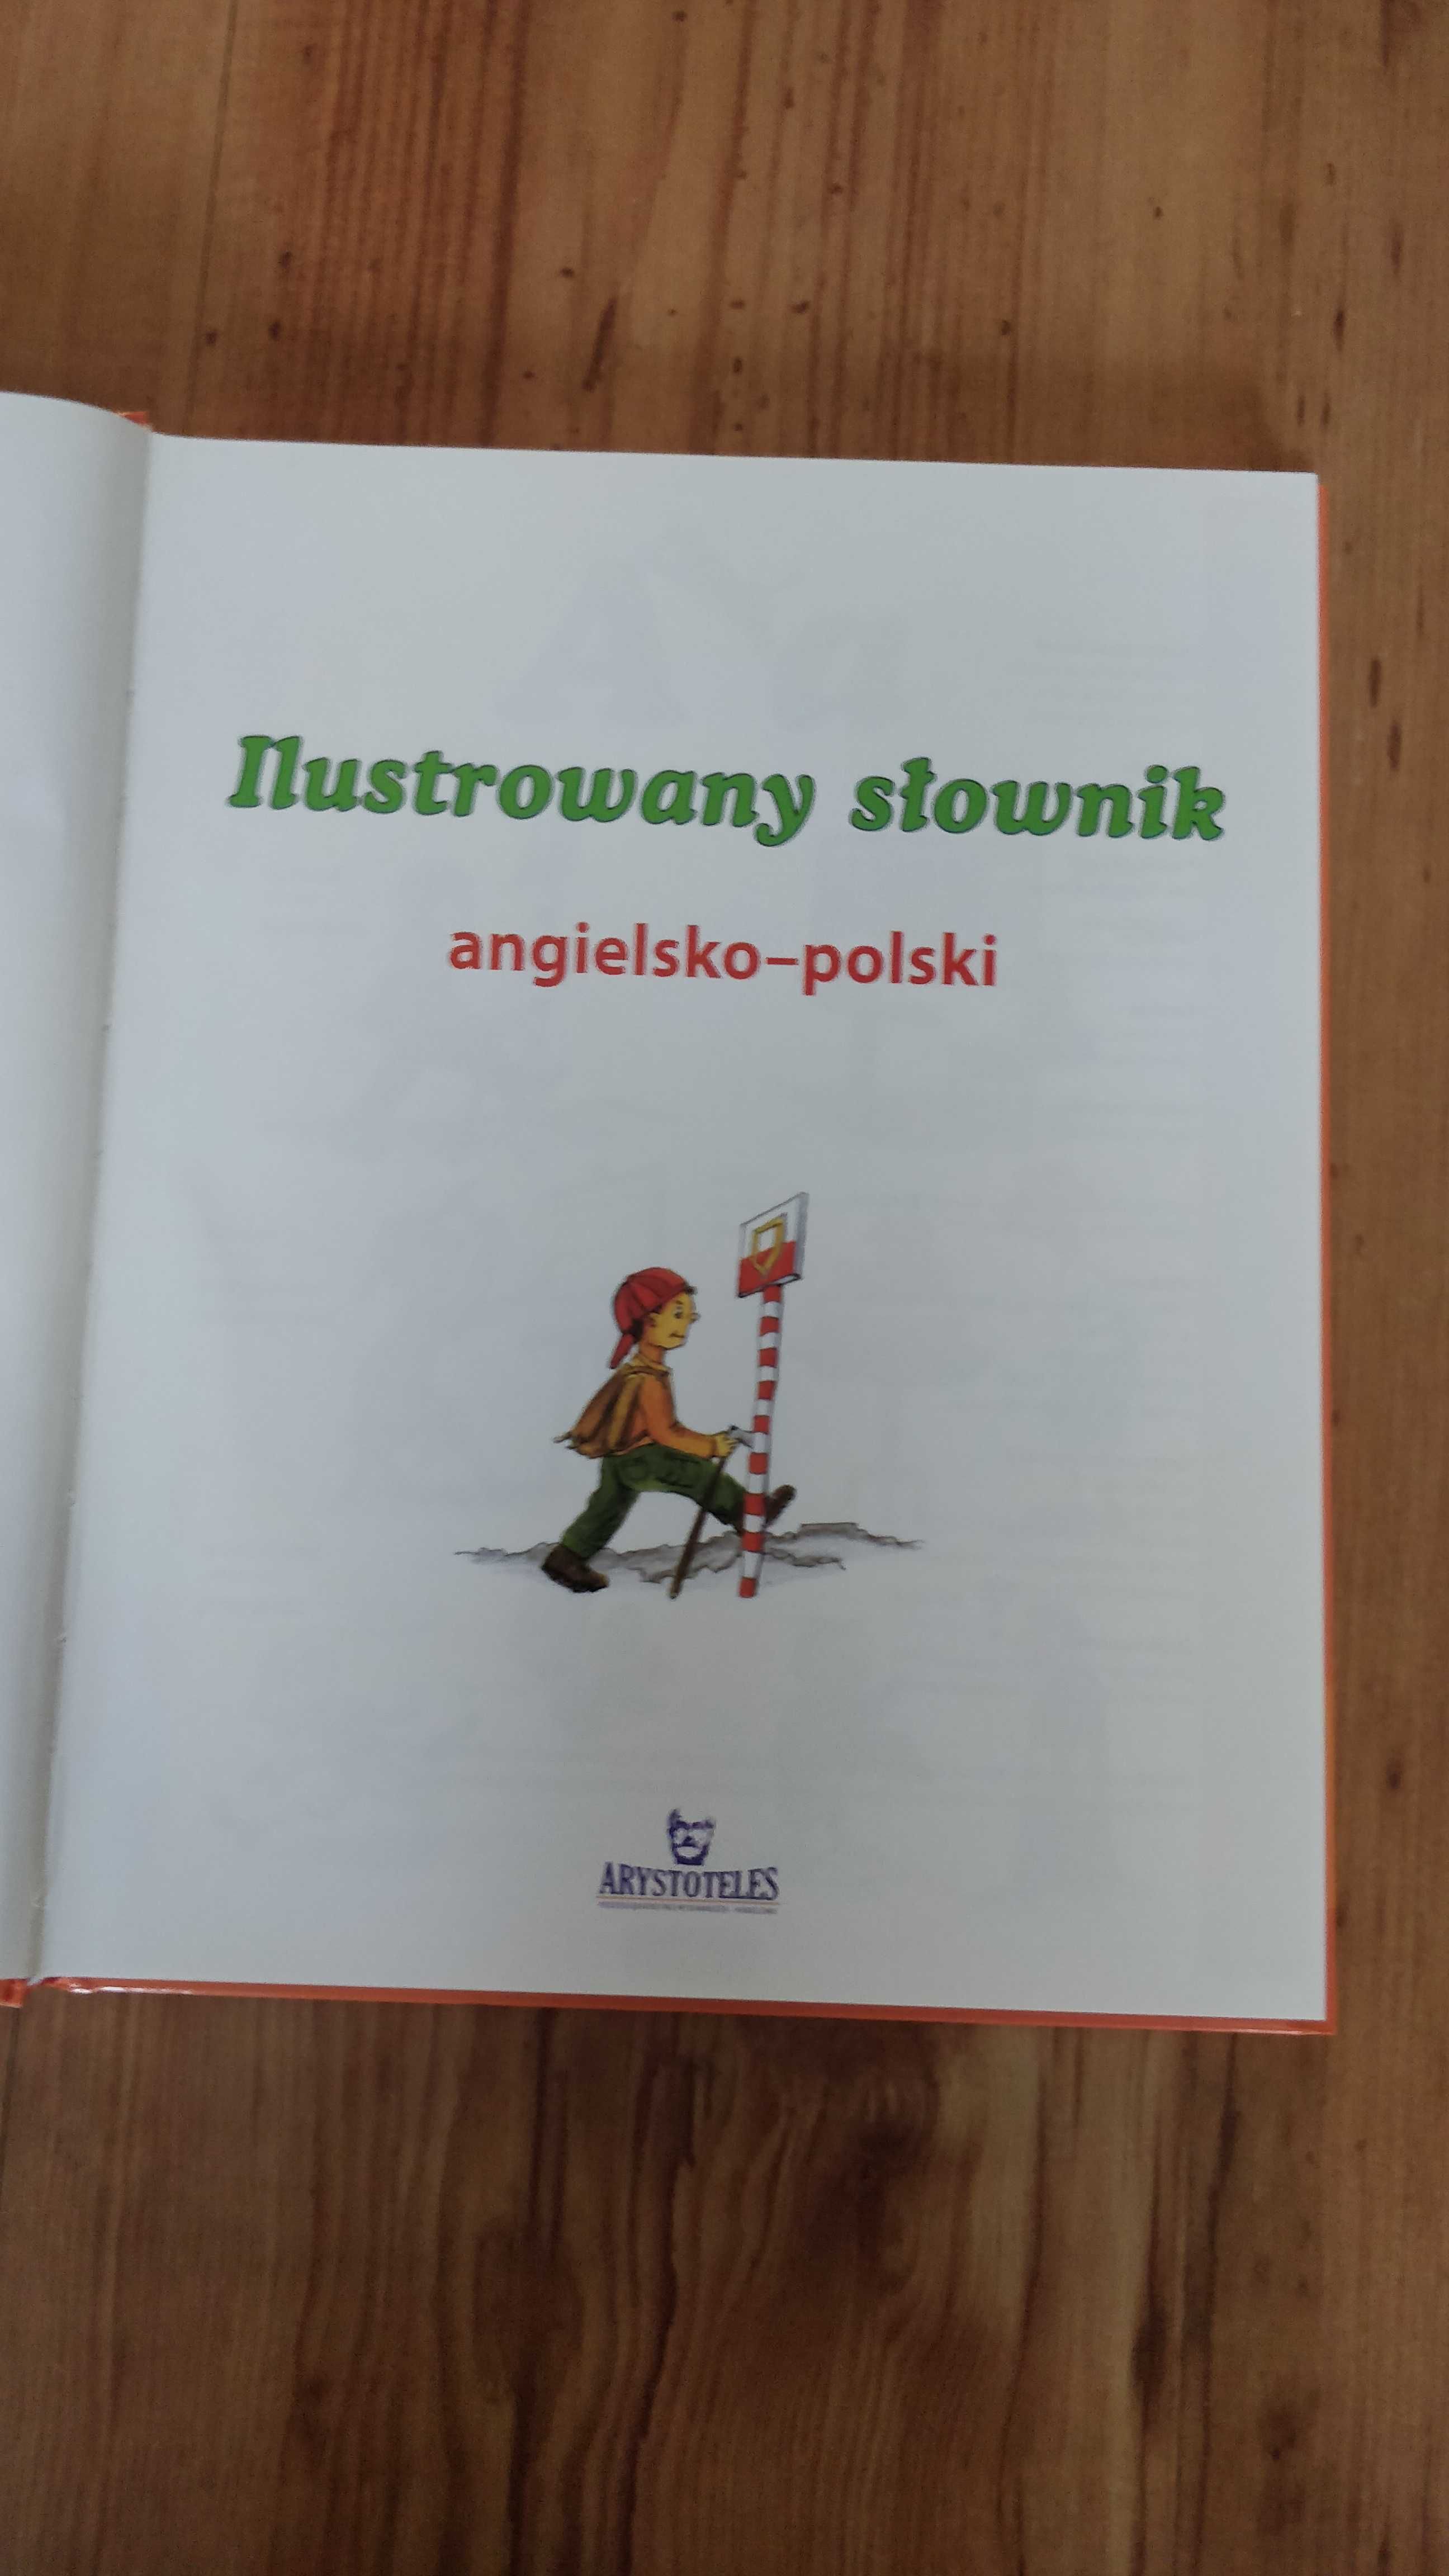 Słownik ilustrowany angielsko-polski nowy